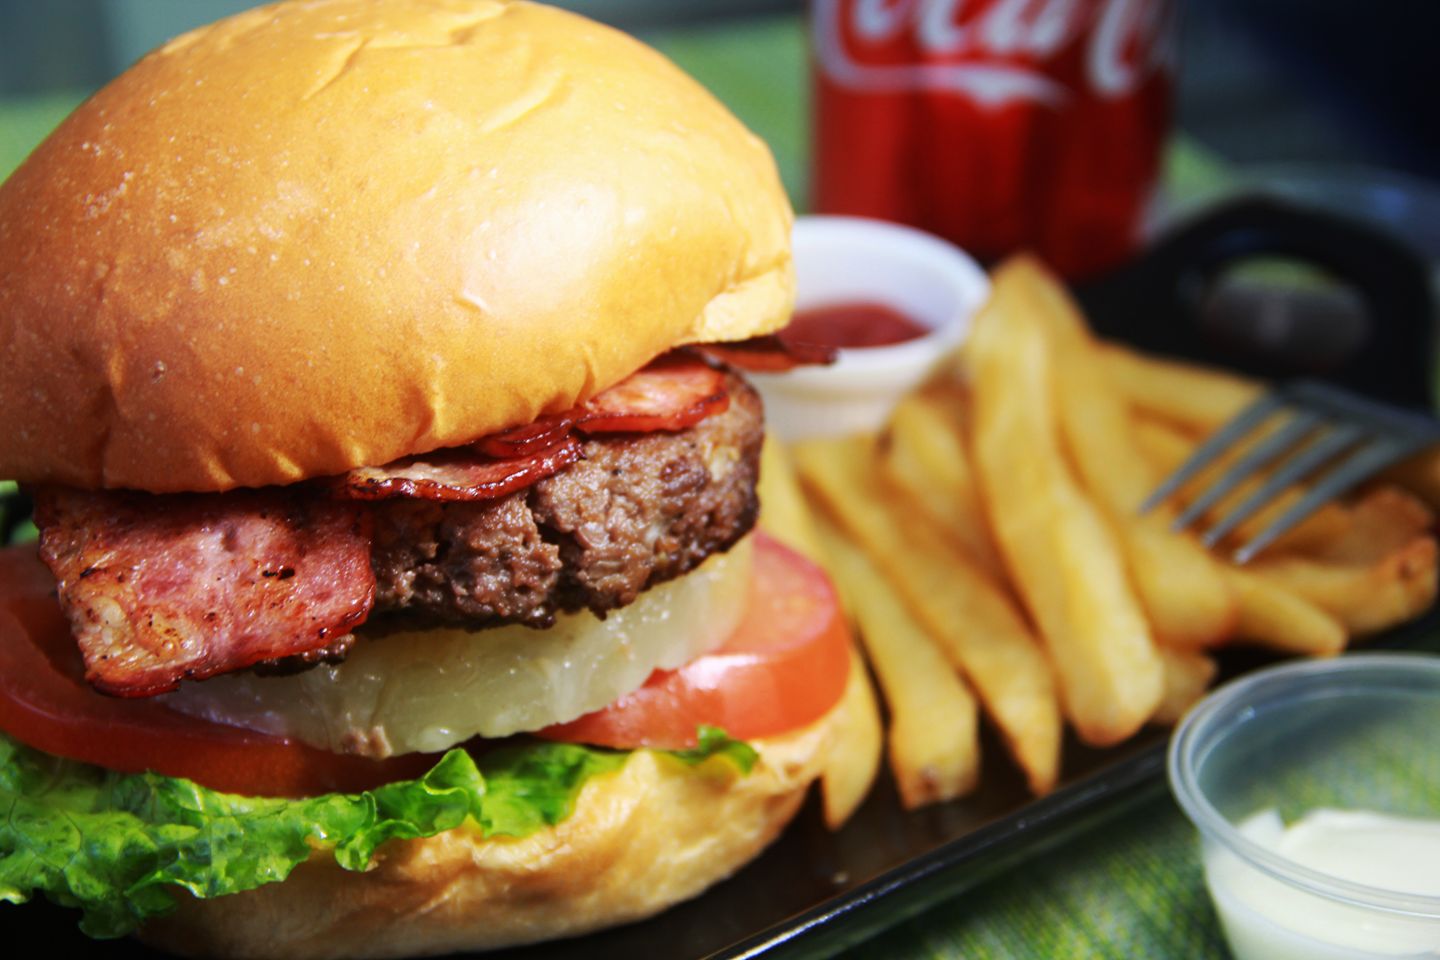 灣仔 街坊名物 平民漢堡店 Burger Home 漢堡 香港品牌 良心小店 煙肉菠蘿牛肉漢堡